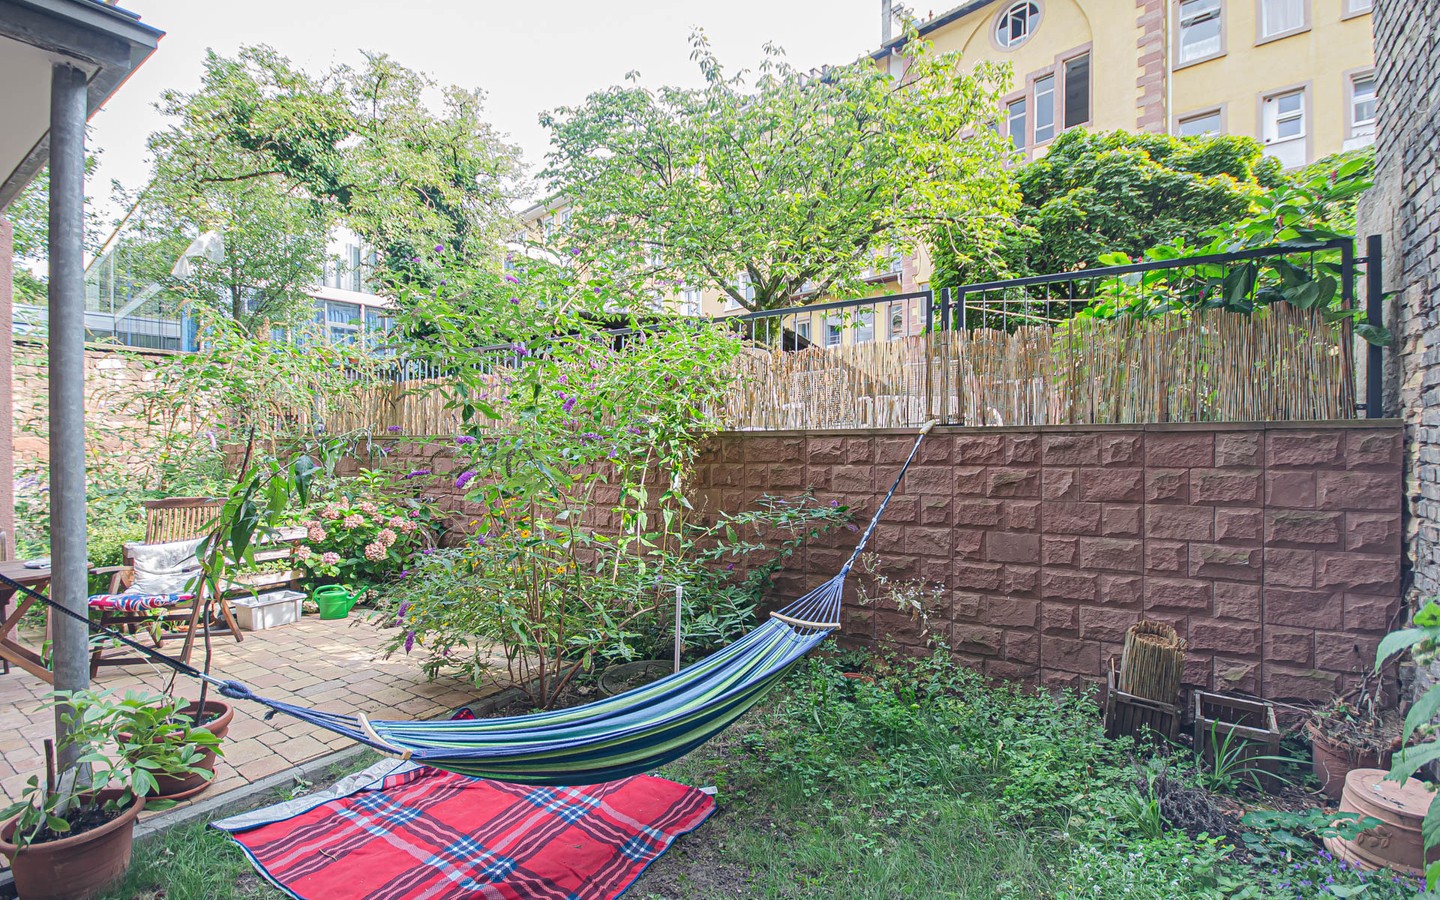 Garten - Mittendrin und dennoch ruhig:
Sanierte Altbauwohnung mit Gartenanteil